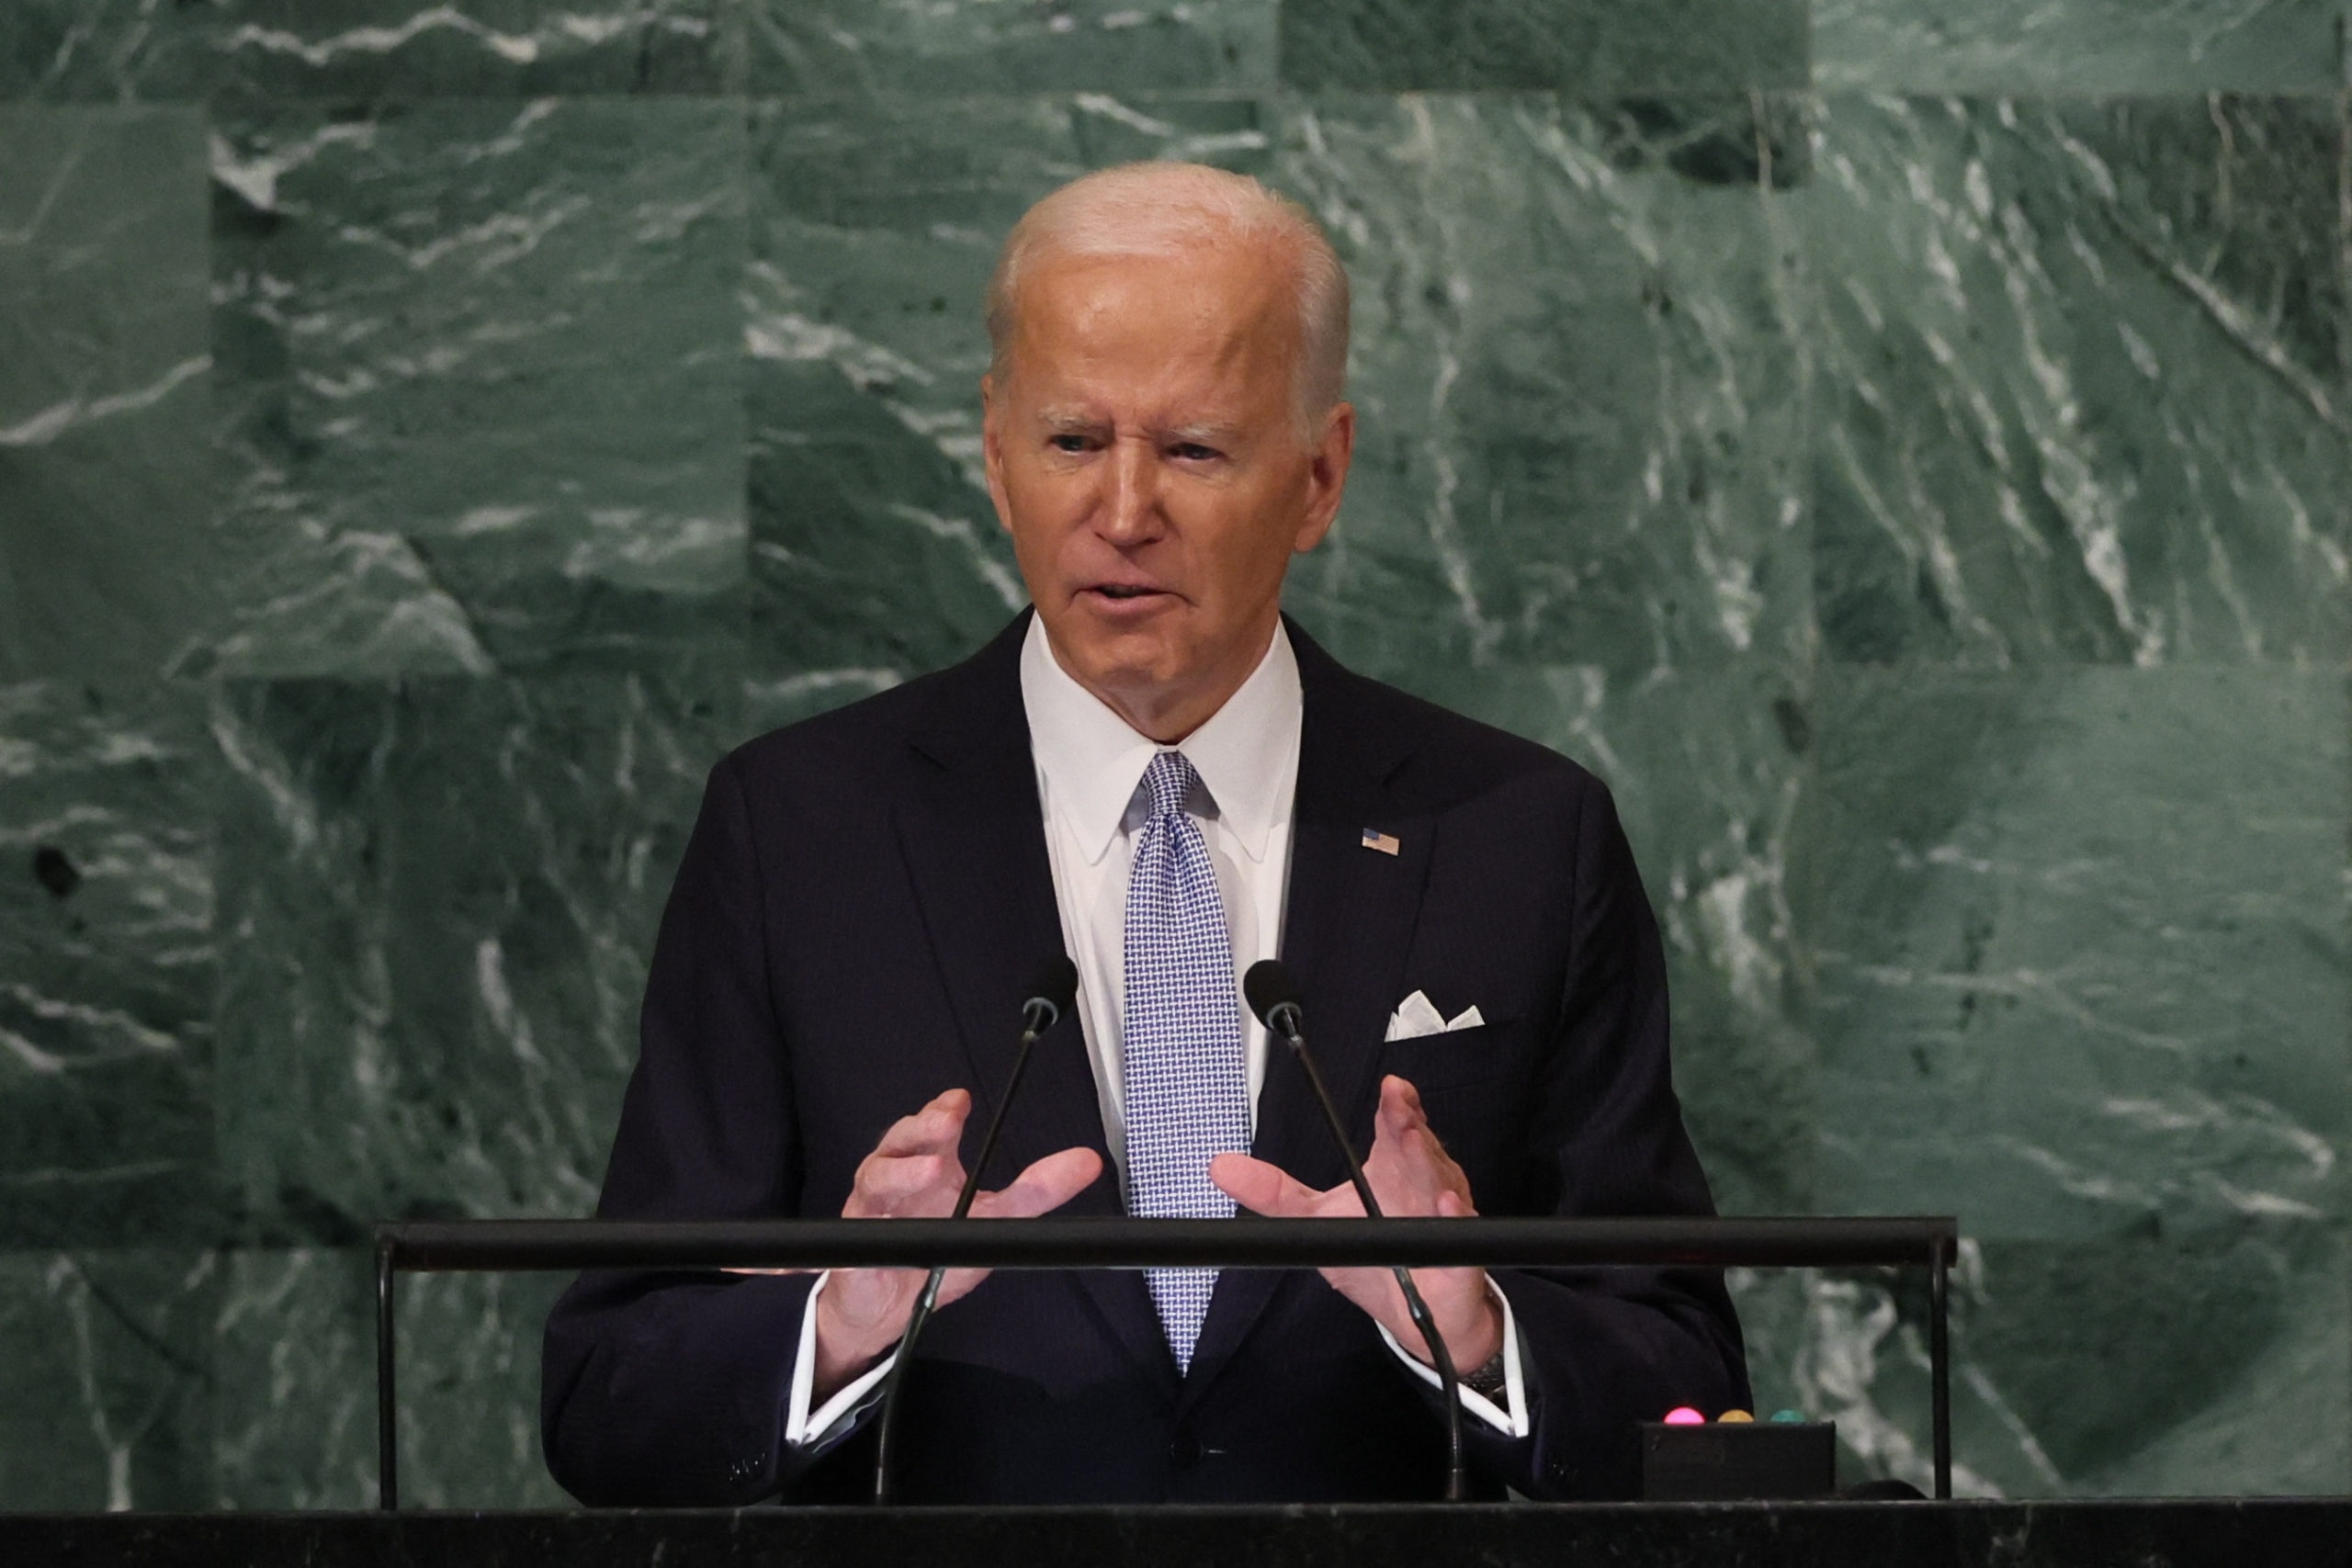 Biden acusa a Rusia de amenazas nucleares "irresponsables" y de violar la Carta de la ONU